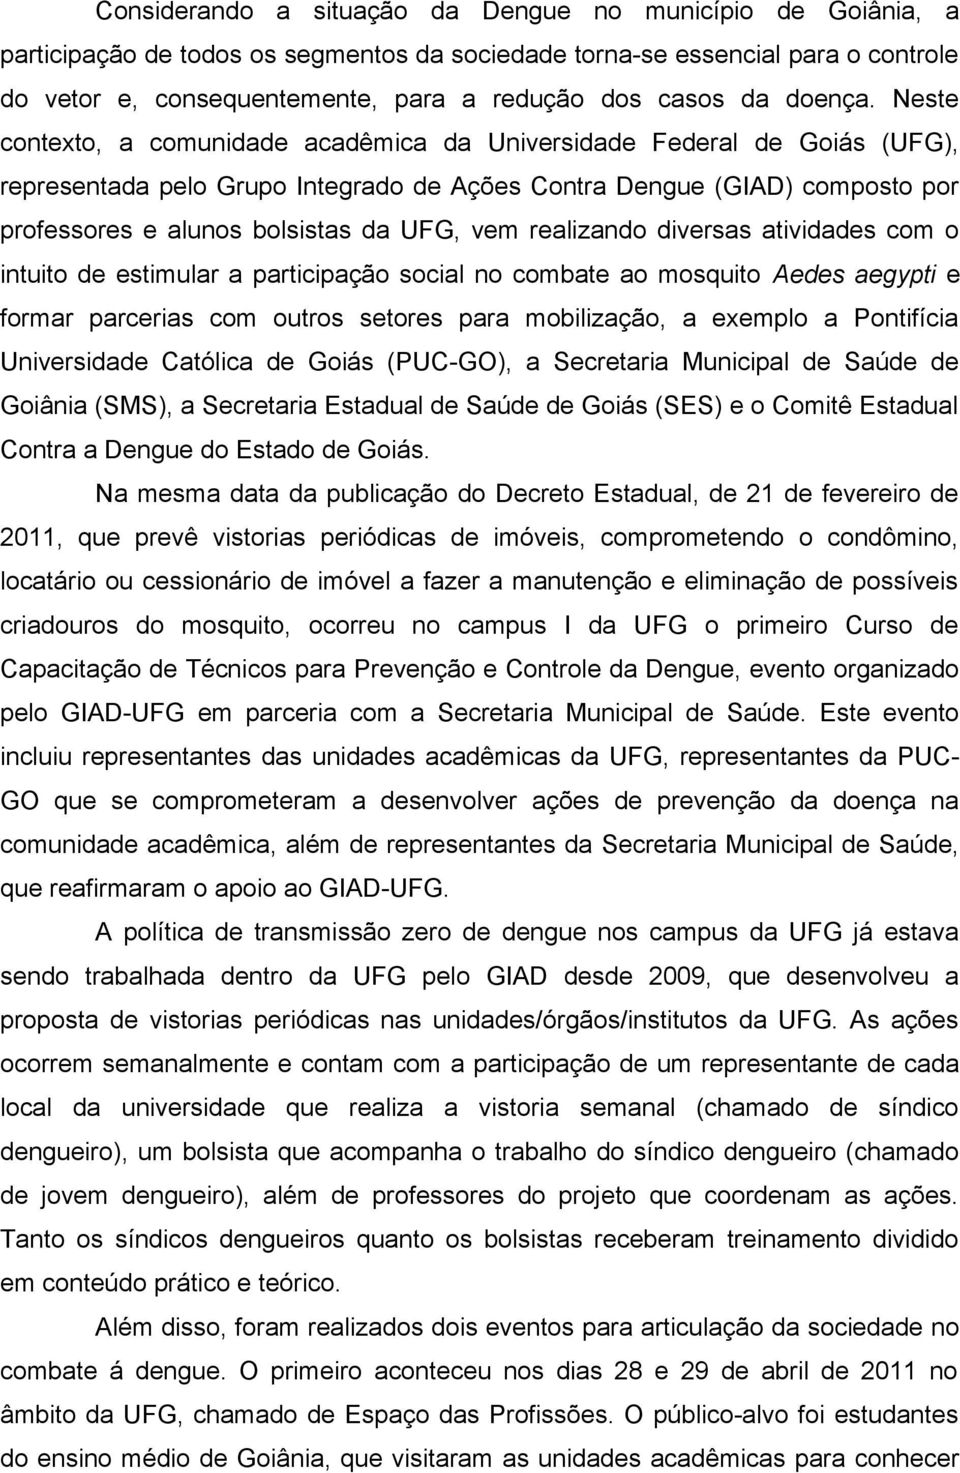 Neste contexto, a comunidade acadêmica da Universidade Federal de Goiás (UFG), representada pelo Grupo Integrado de Ações Contra Dengue (GIAD) composto por professores e alunos bolsistas da UFG, vem